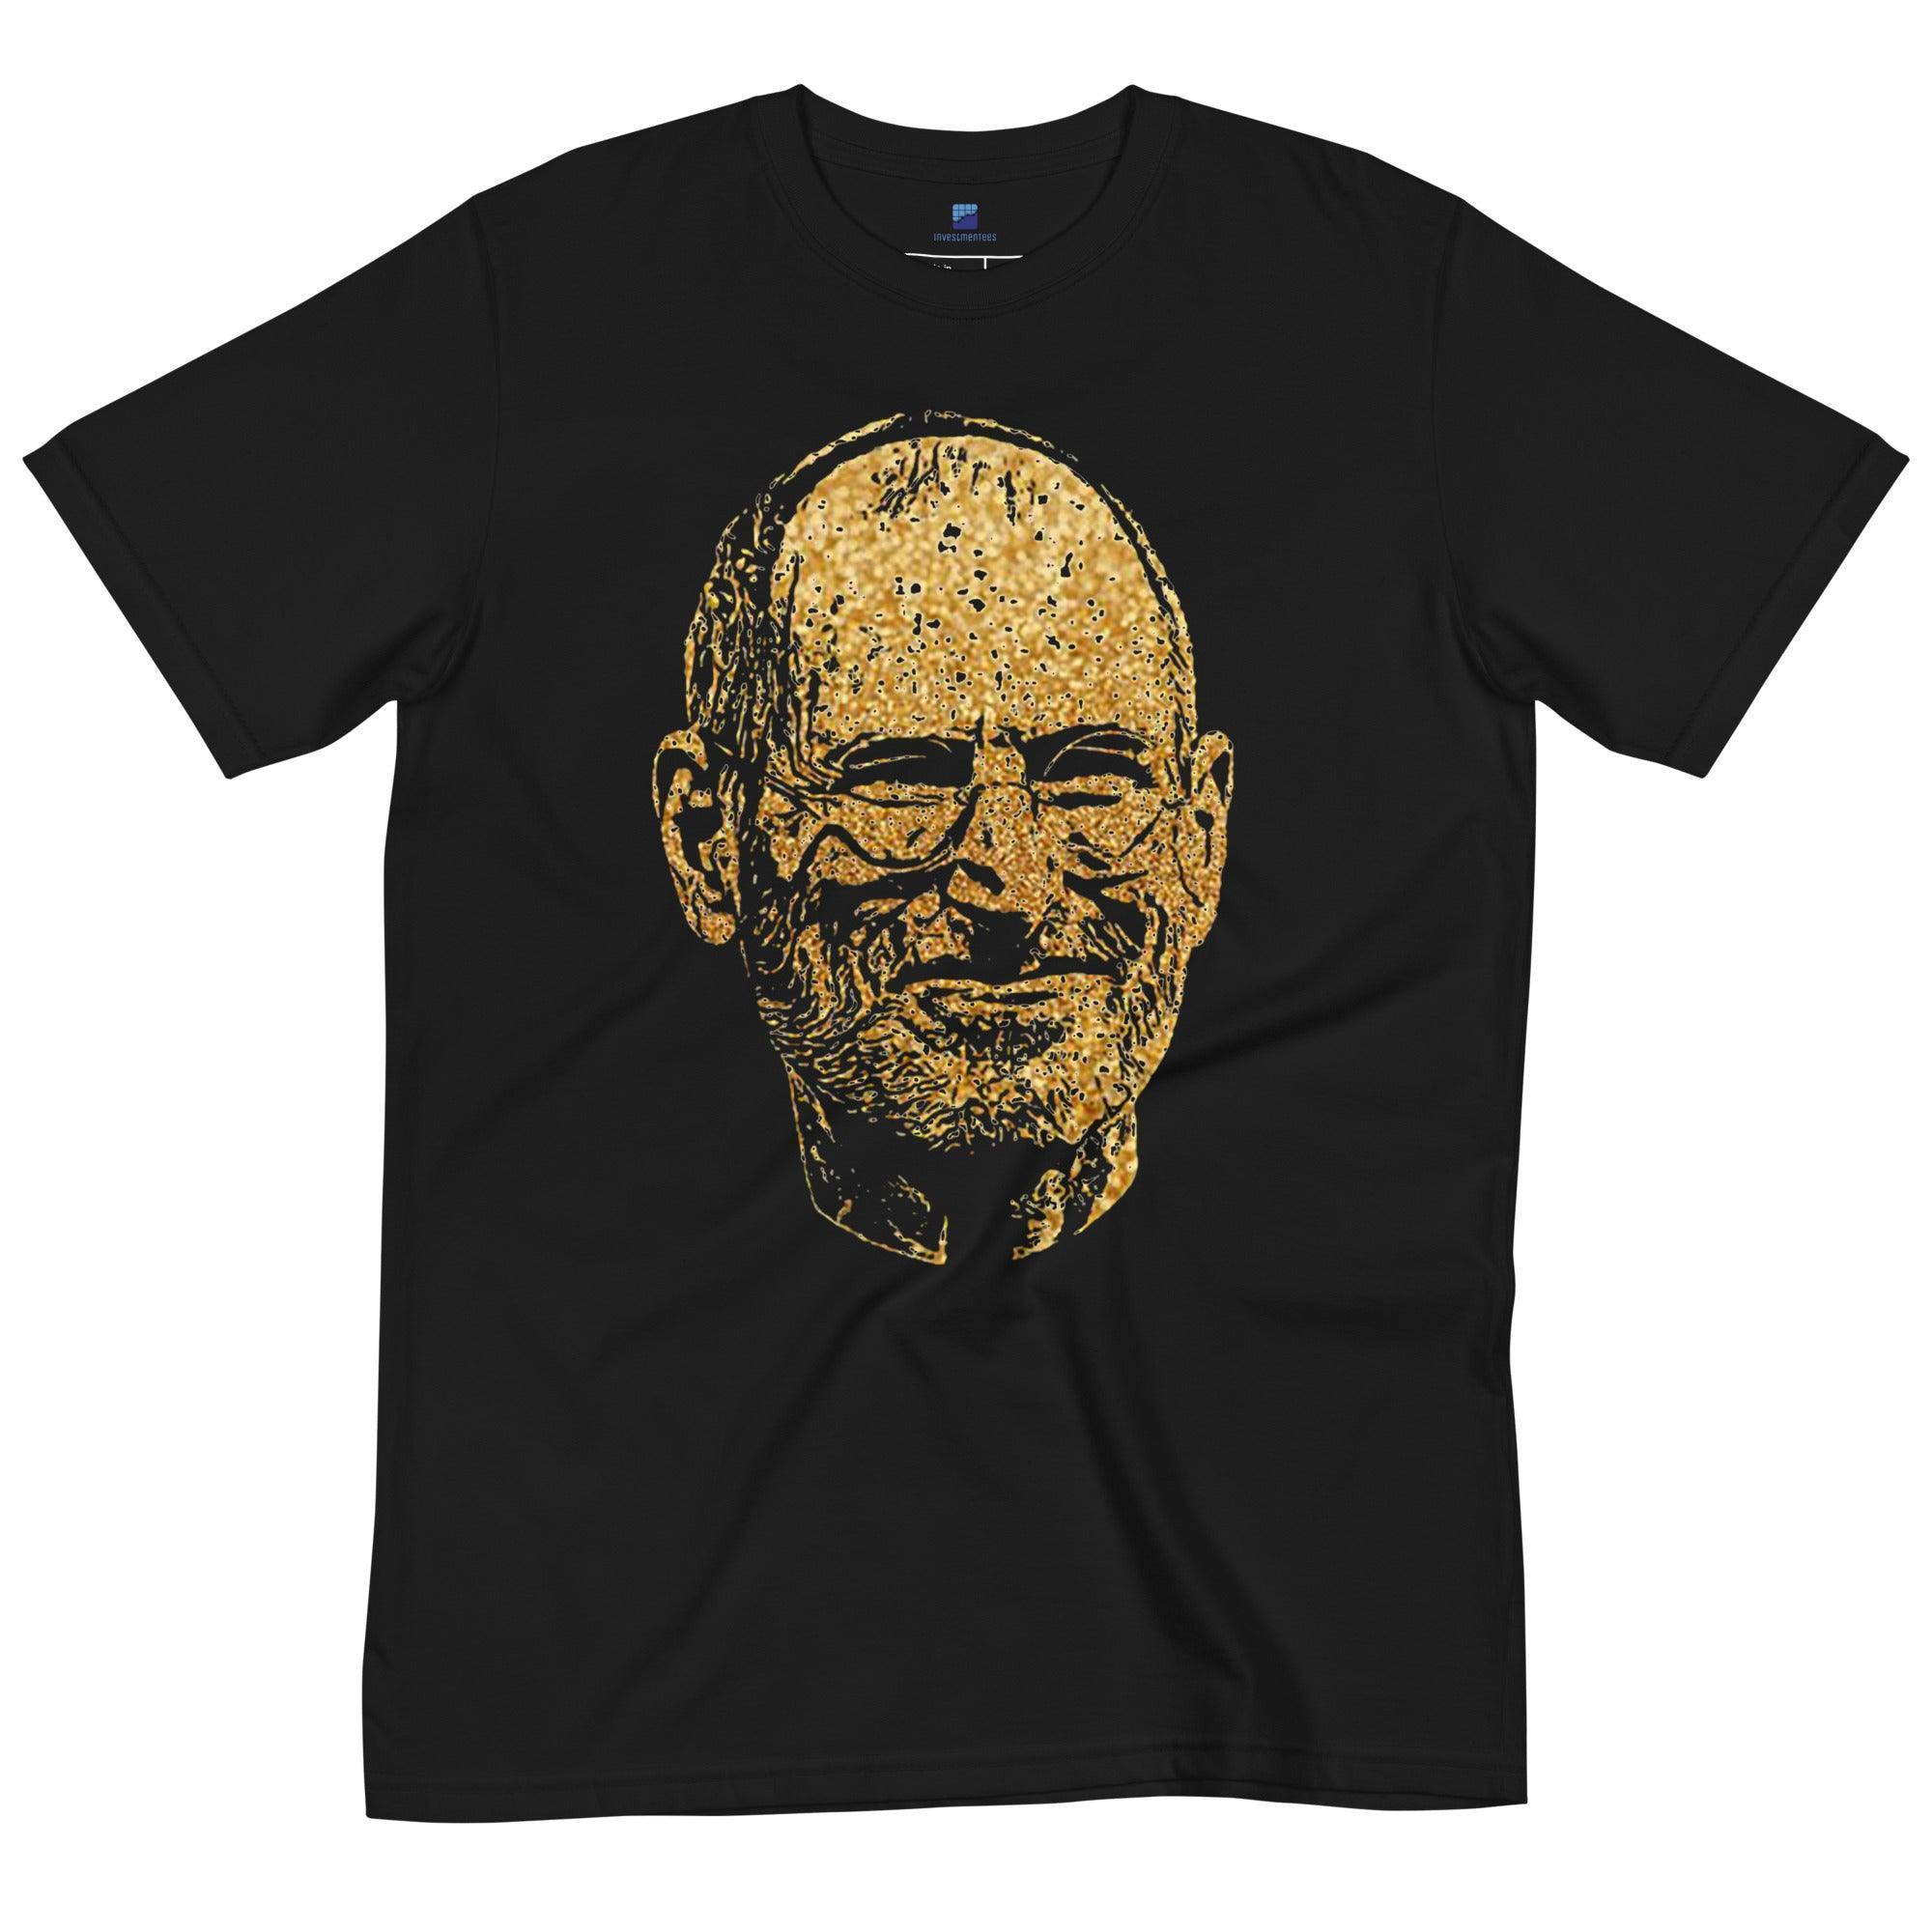 Steve Jobs Gold T-Shirt - InvestmenTees